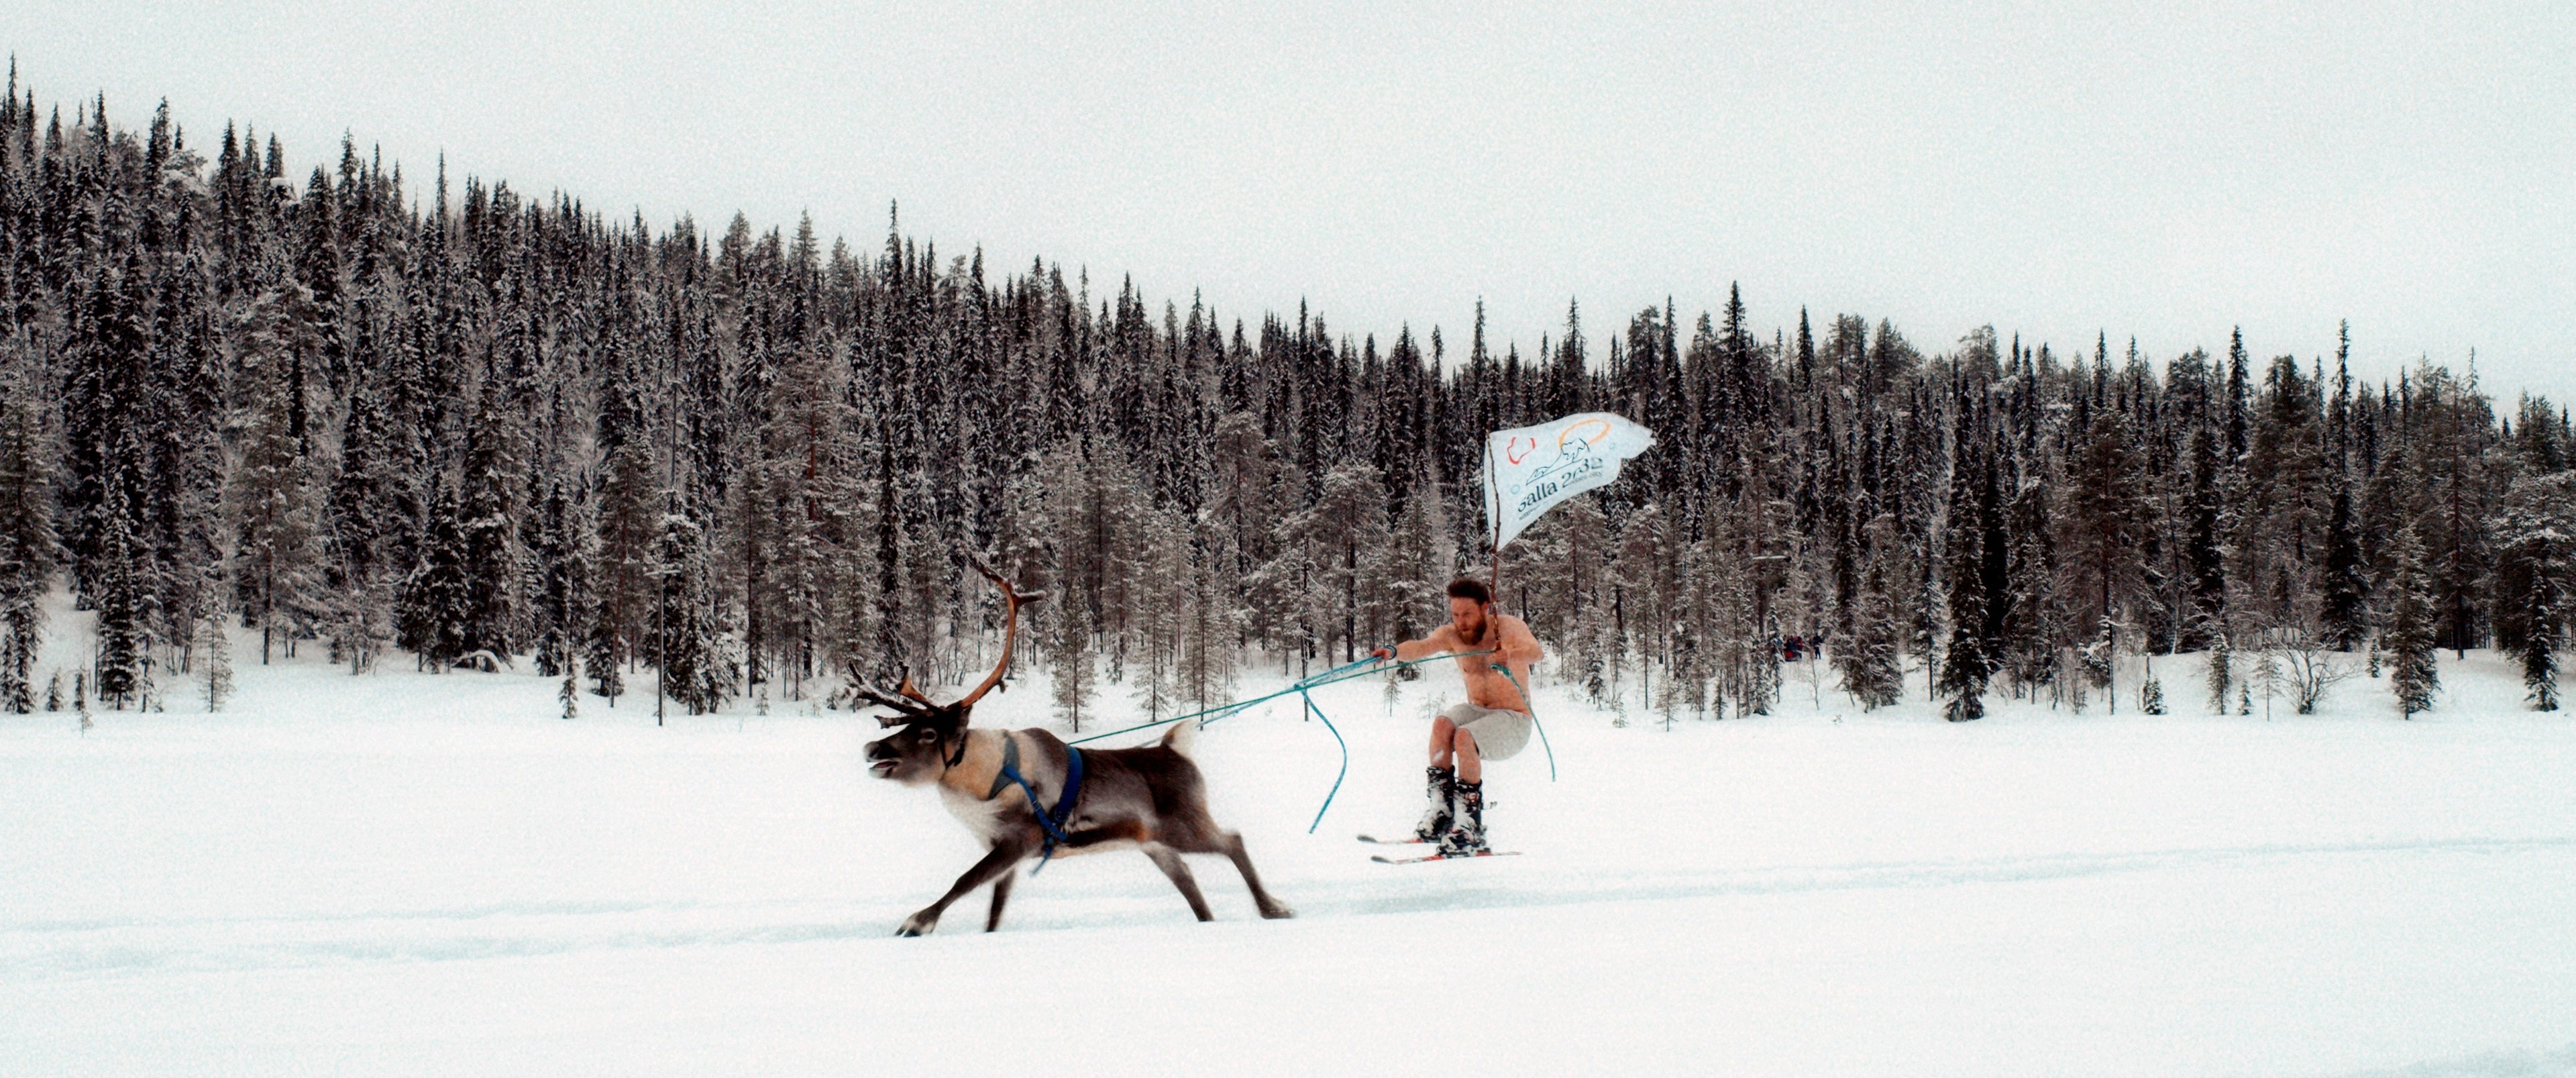 ¿JJOO en Laponia? Descubre esta impactante campaña contra el cambio climático